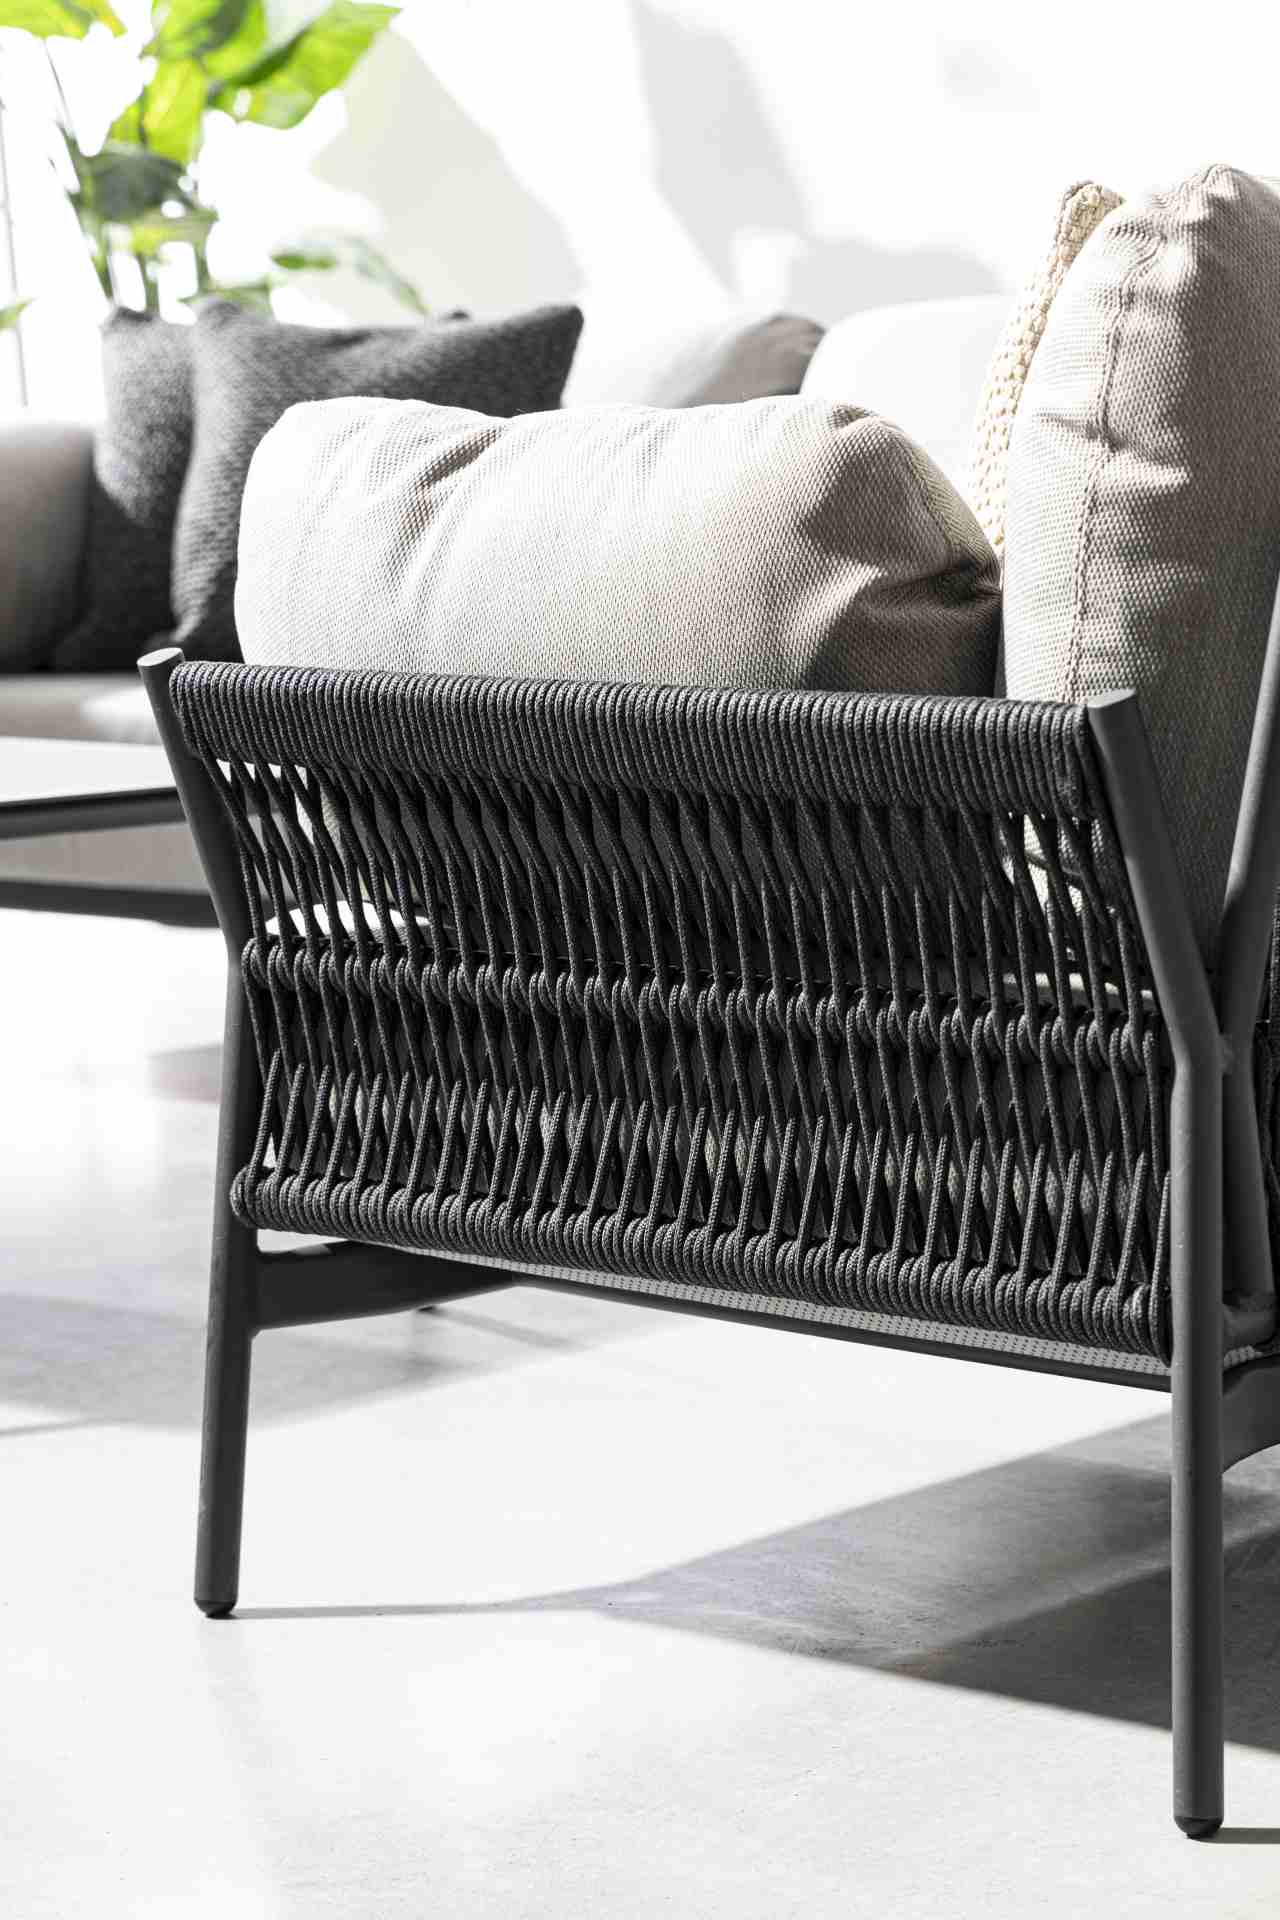 Der Gartensessel Pardis überzeugt mit seinem modernen Design. Gefertigt wurde er aus Olefin-Stoff, welcher einen grauen Farbton besitzt. Das Gestell ist aus Aluminium und hat eine Anthrazit Farbe. Der Sessel verfügt über eine Sitzhöhe von 38 cm und ist fü